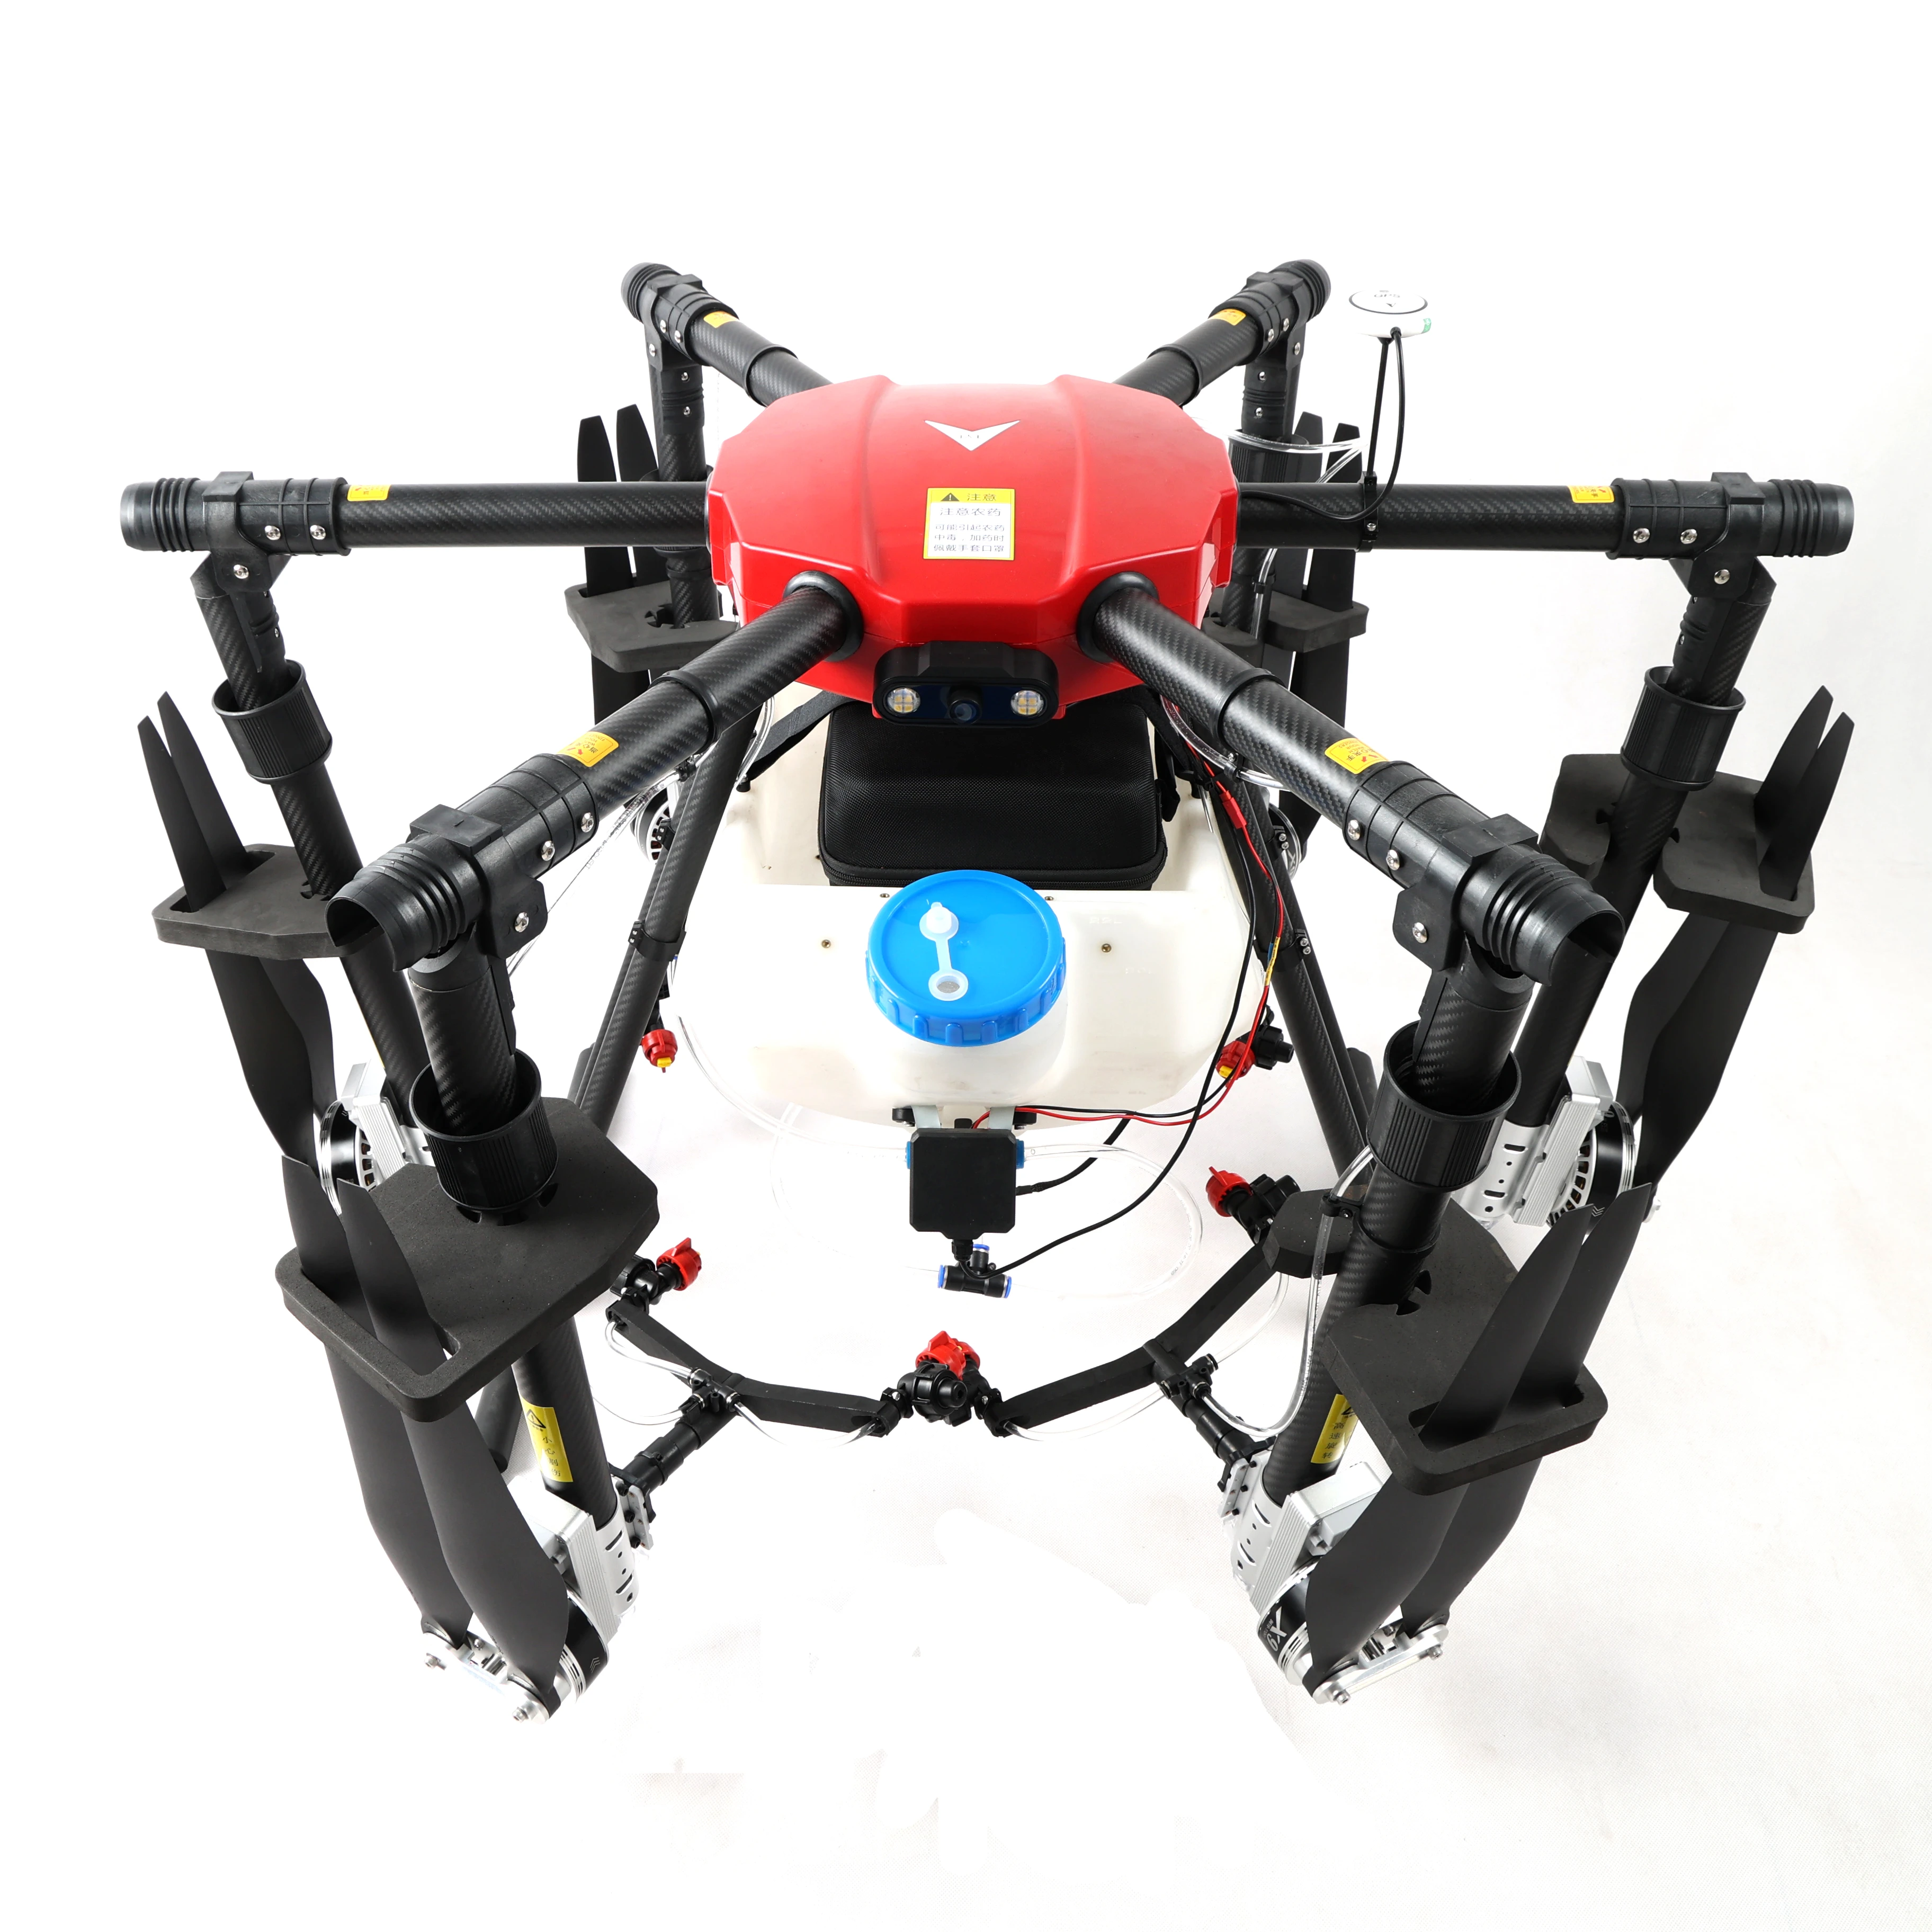 農業用ドローン 6軸農業用無人機 22kg 22l 農業用保護 Agriculture Drone Uav For Agriculturedrone Agriculture Aliexpress